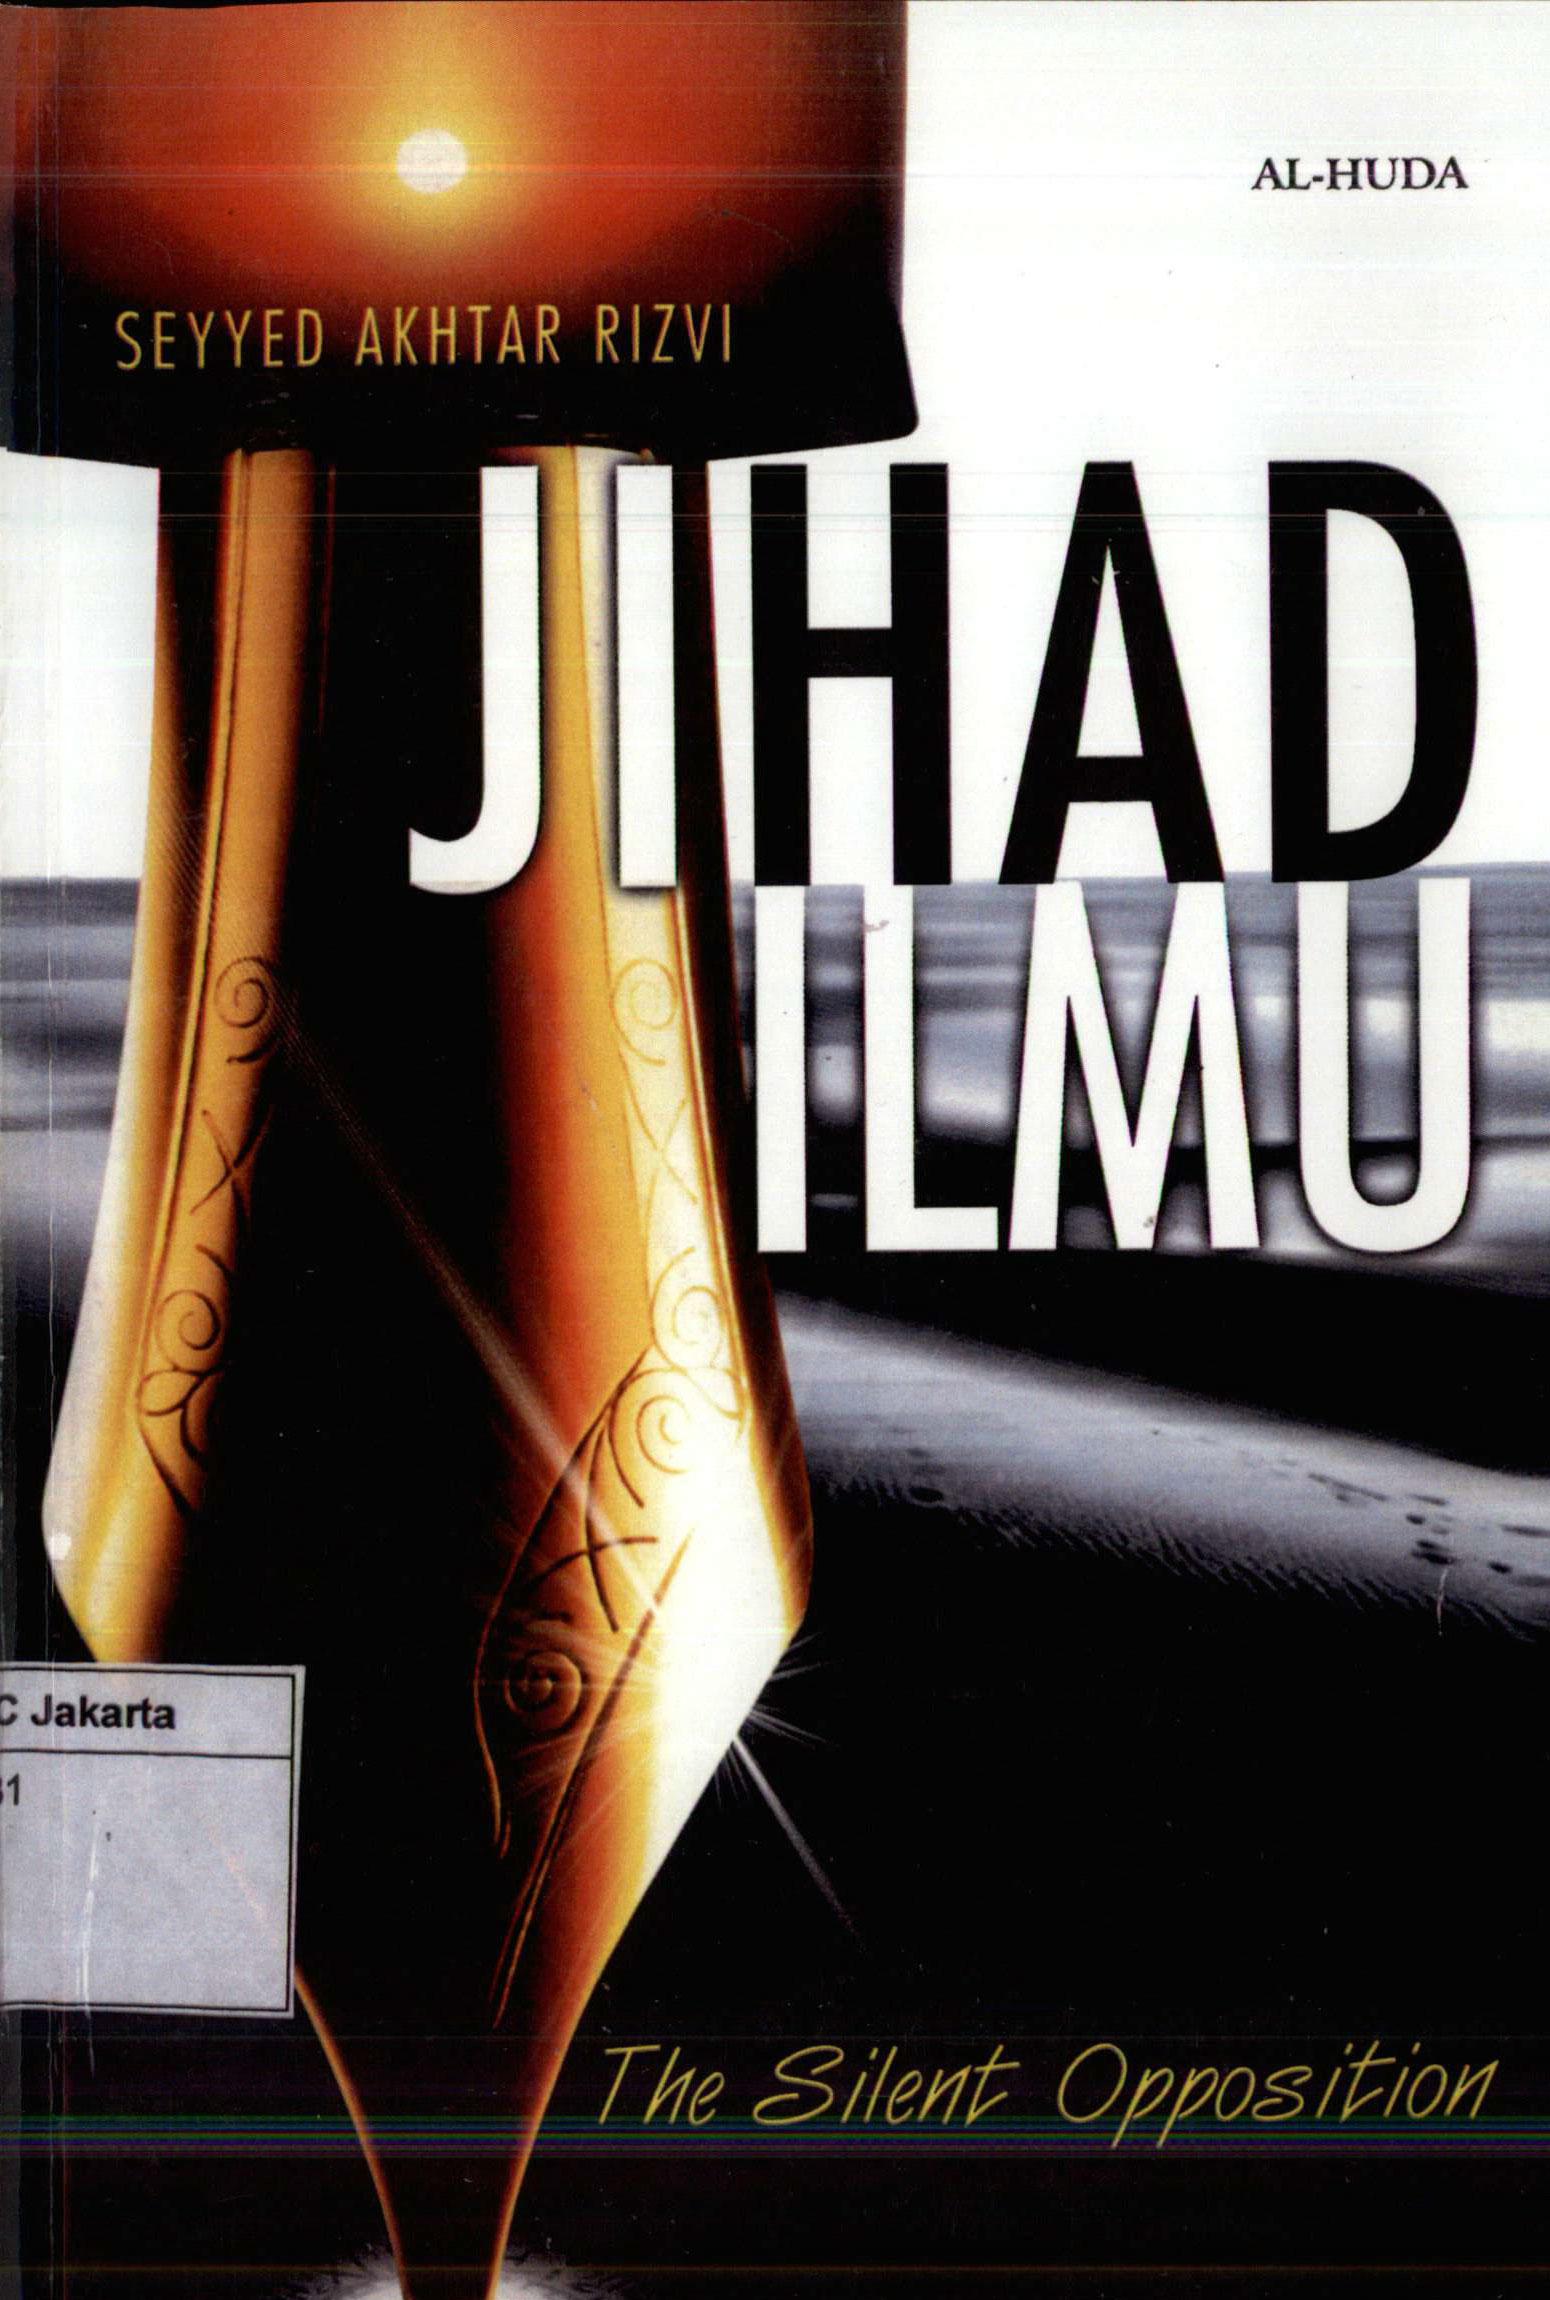 Jihad Ilmu: The Silent Opposition